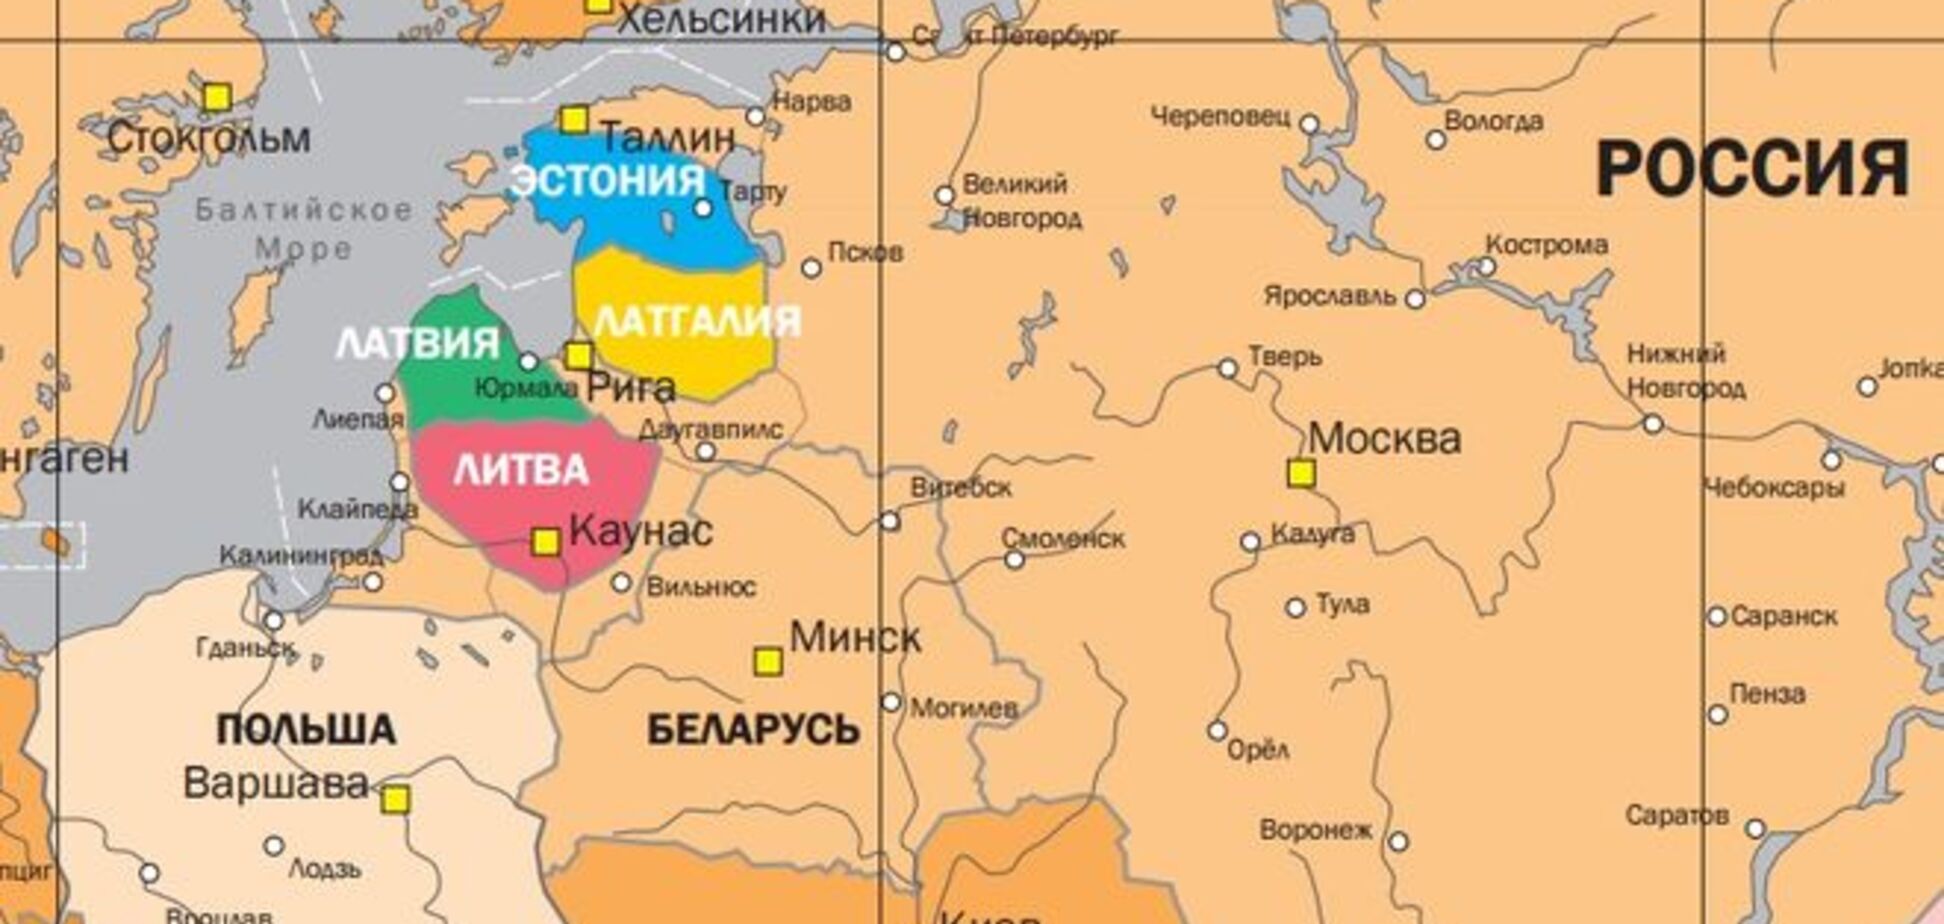 Прибалтийский фронт России и призрак Цусимы в степях Украины 